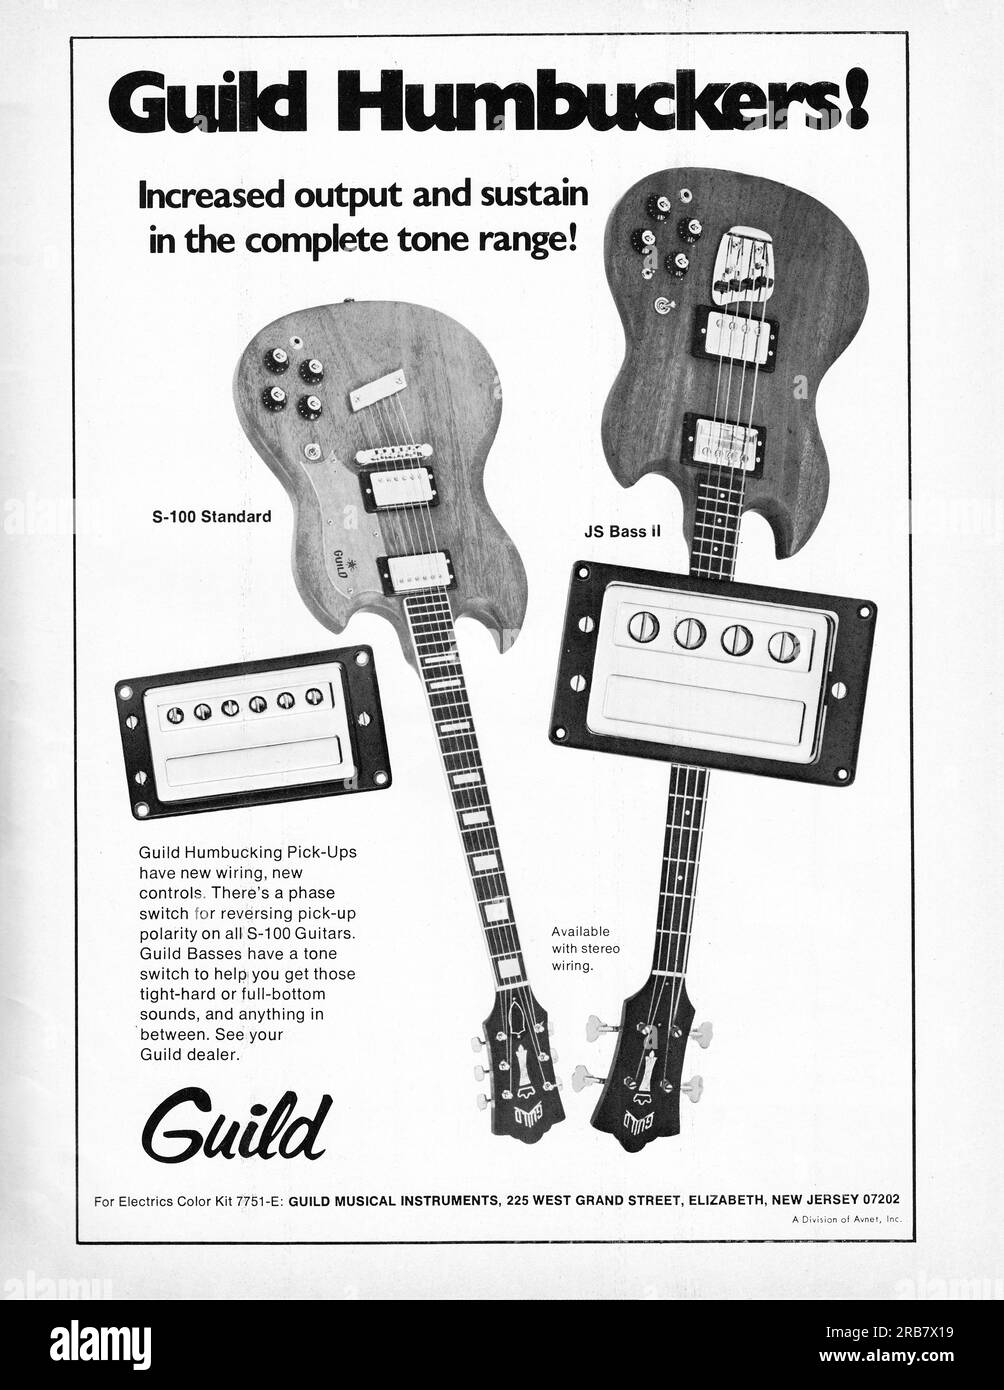 Une publicité de Guild louant les caractéristiques de leurs pick-ups Humbucking sur leurs guitares anfgbass à 6 cordes. D'un magazine de musique du milieu des années 1960. Banque D'Images